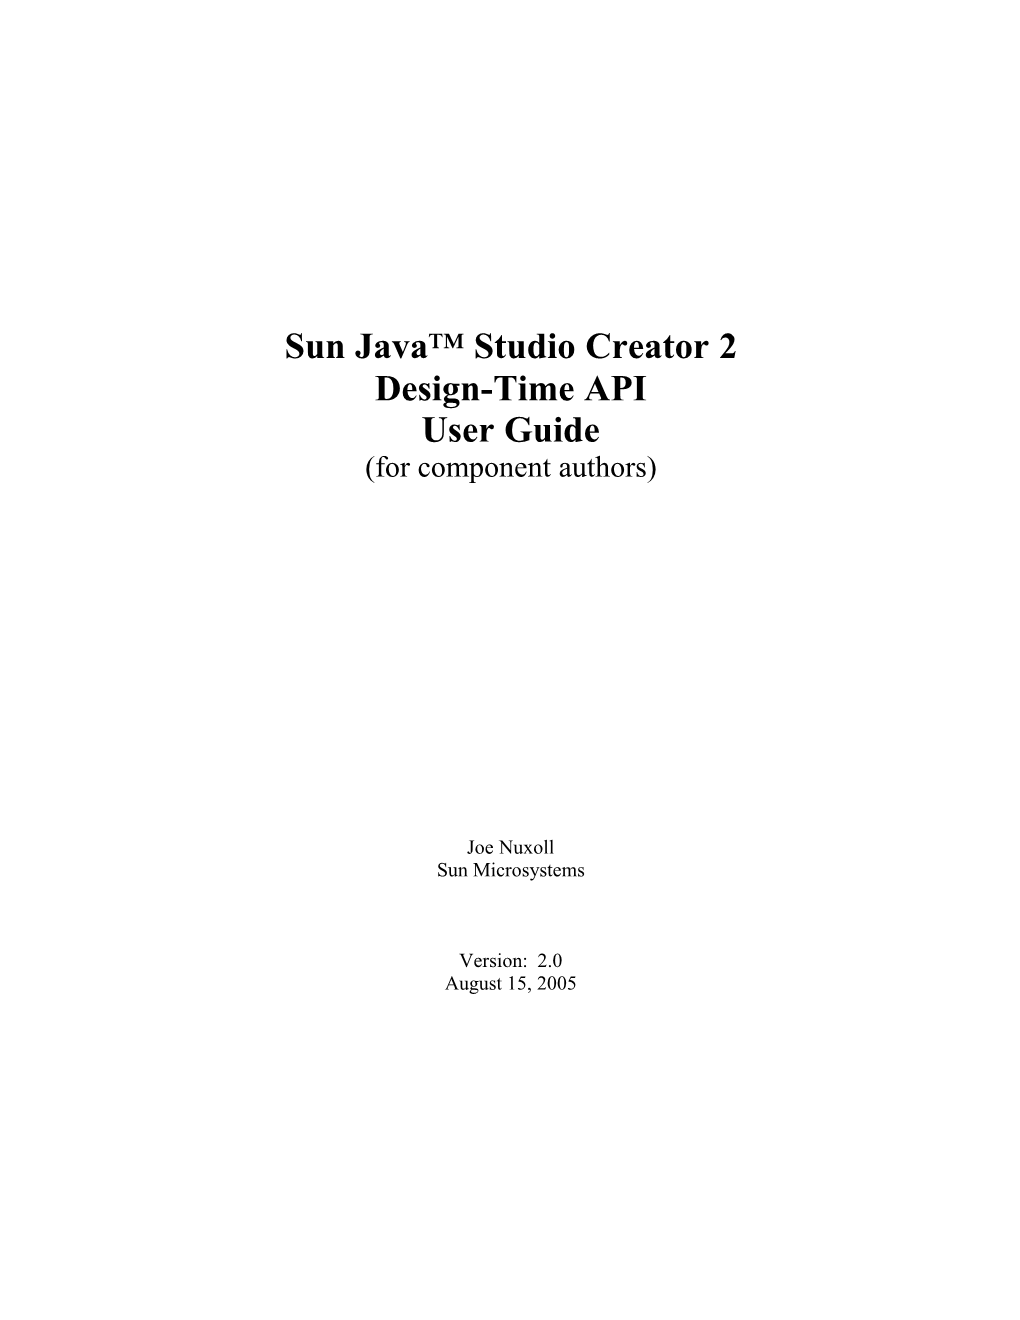 Sun Java Studio Creator Design-Time